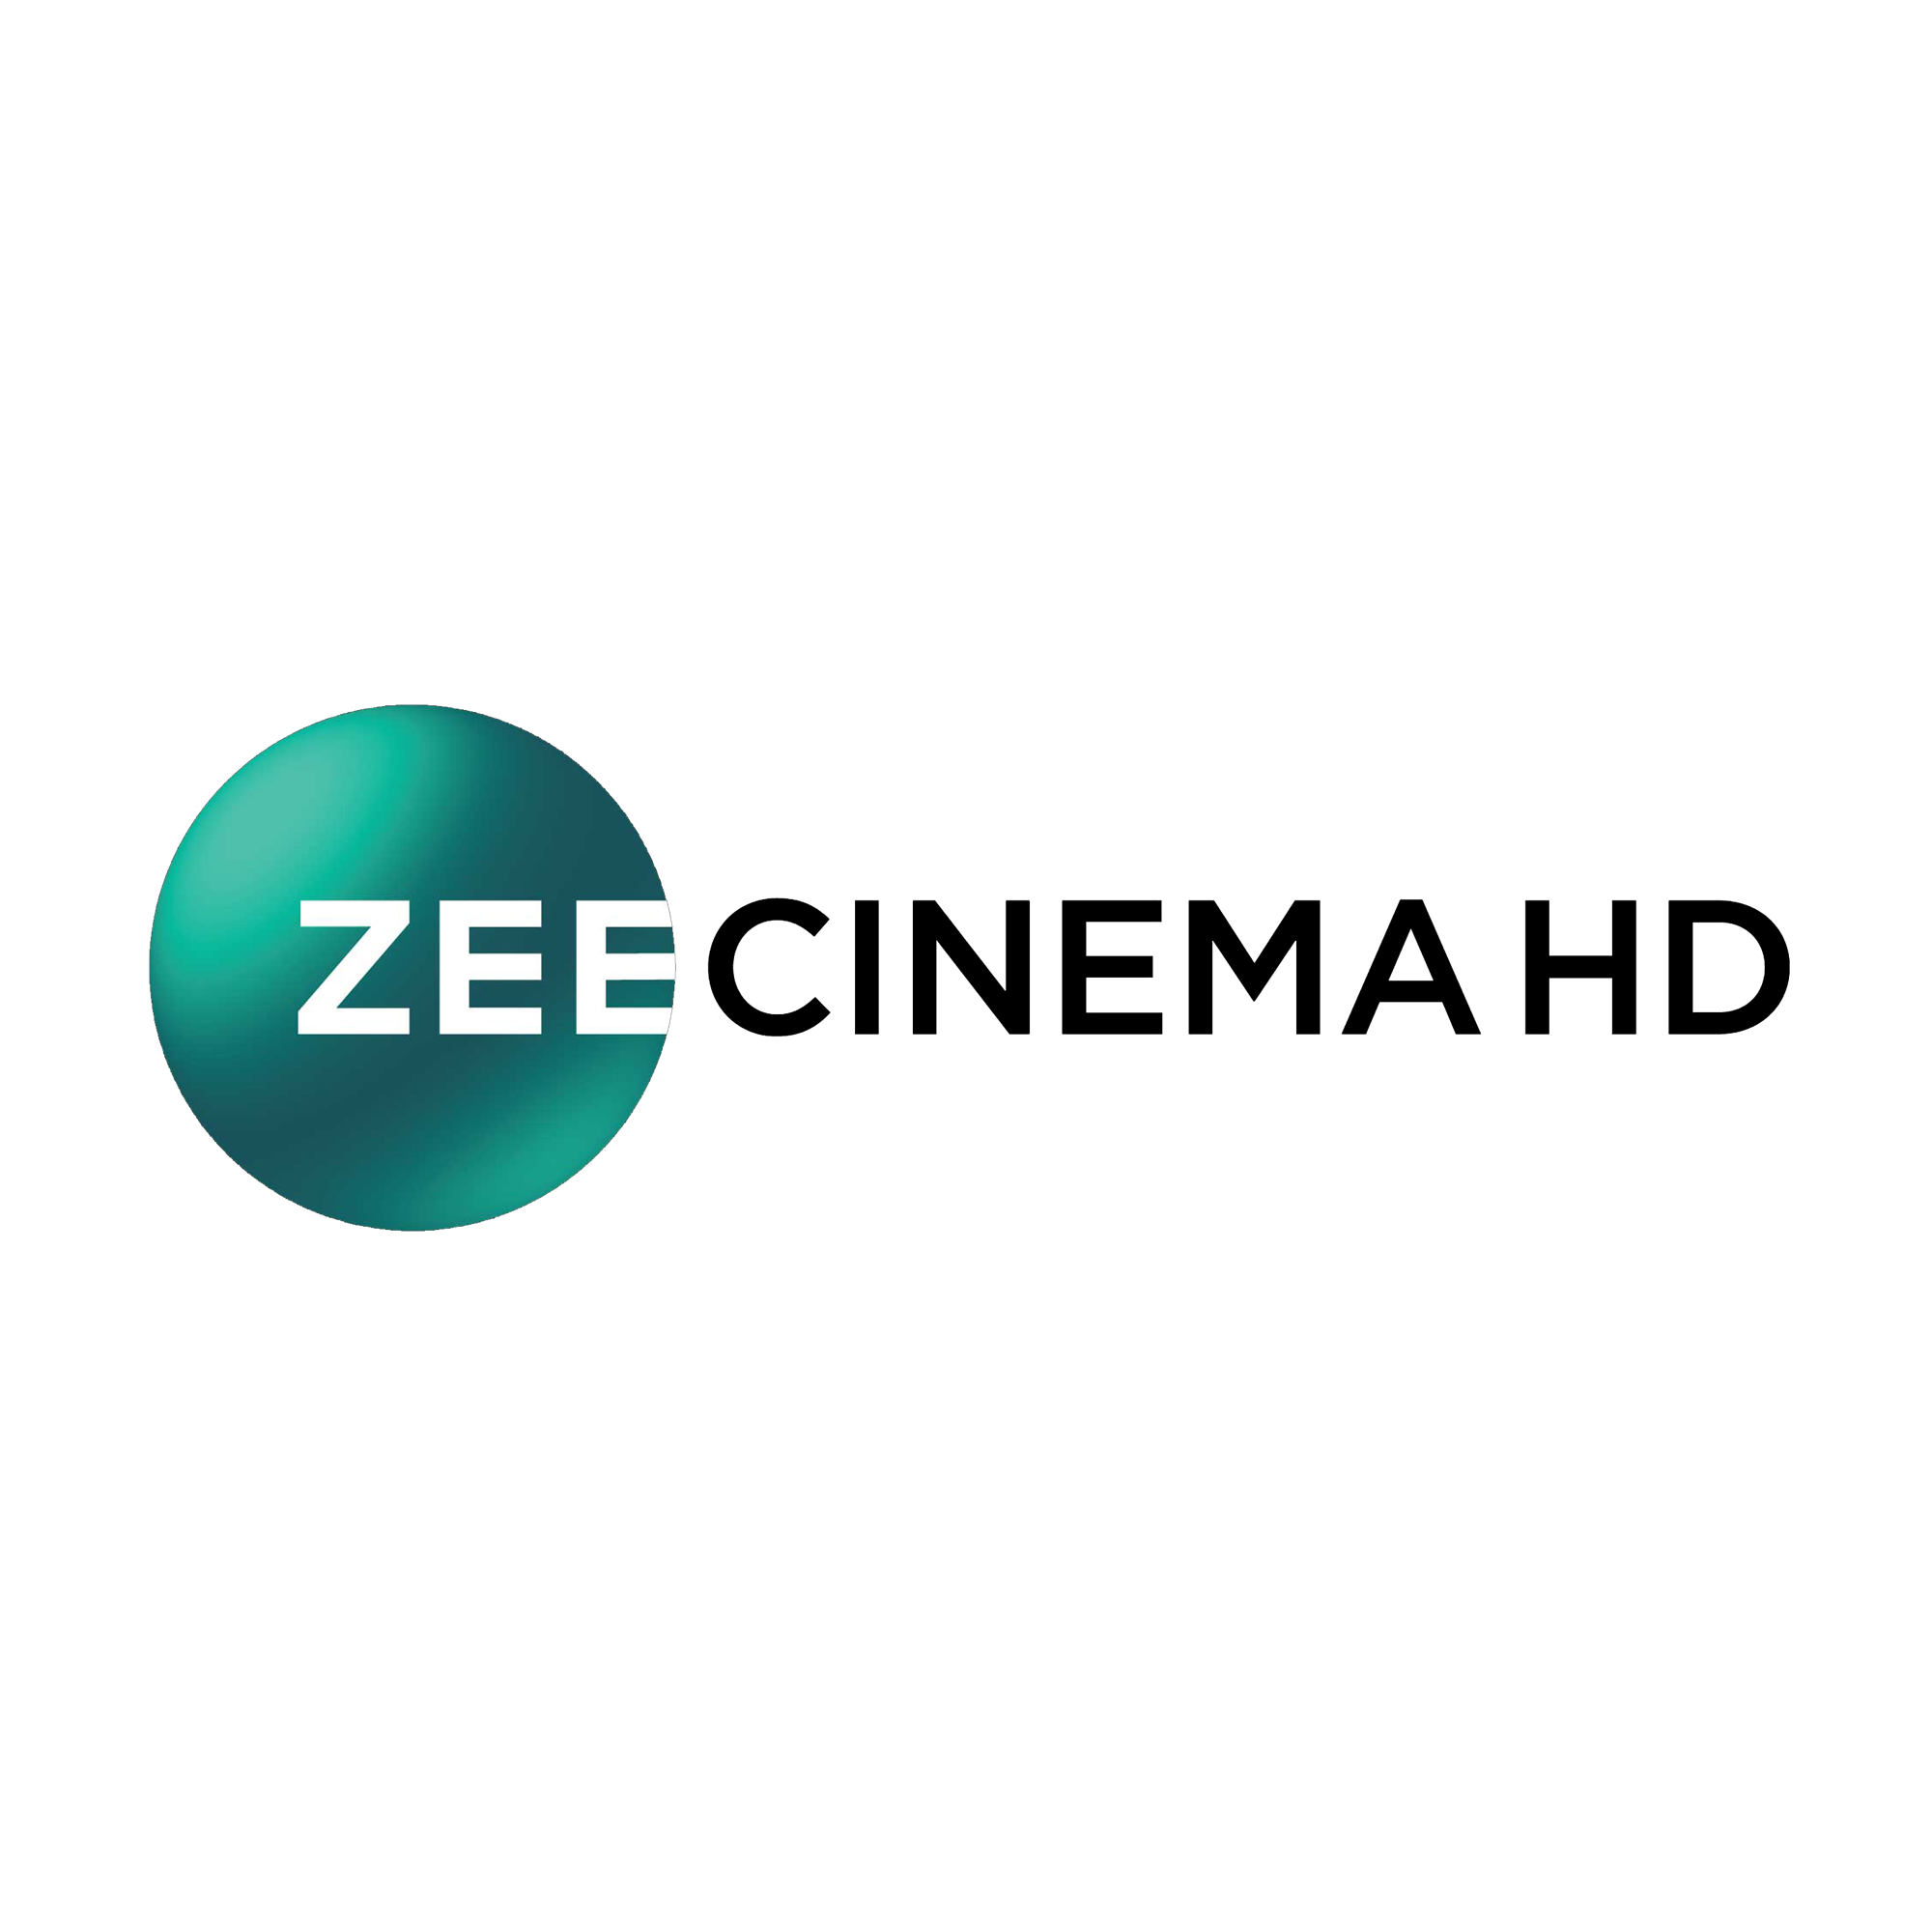 Zee Cinema to air 'Darlings' on Jan 29